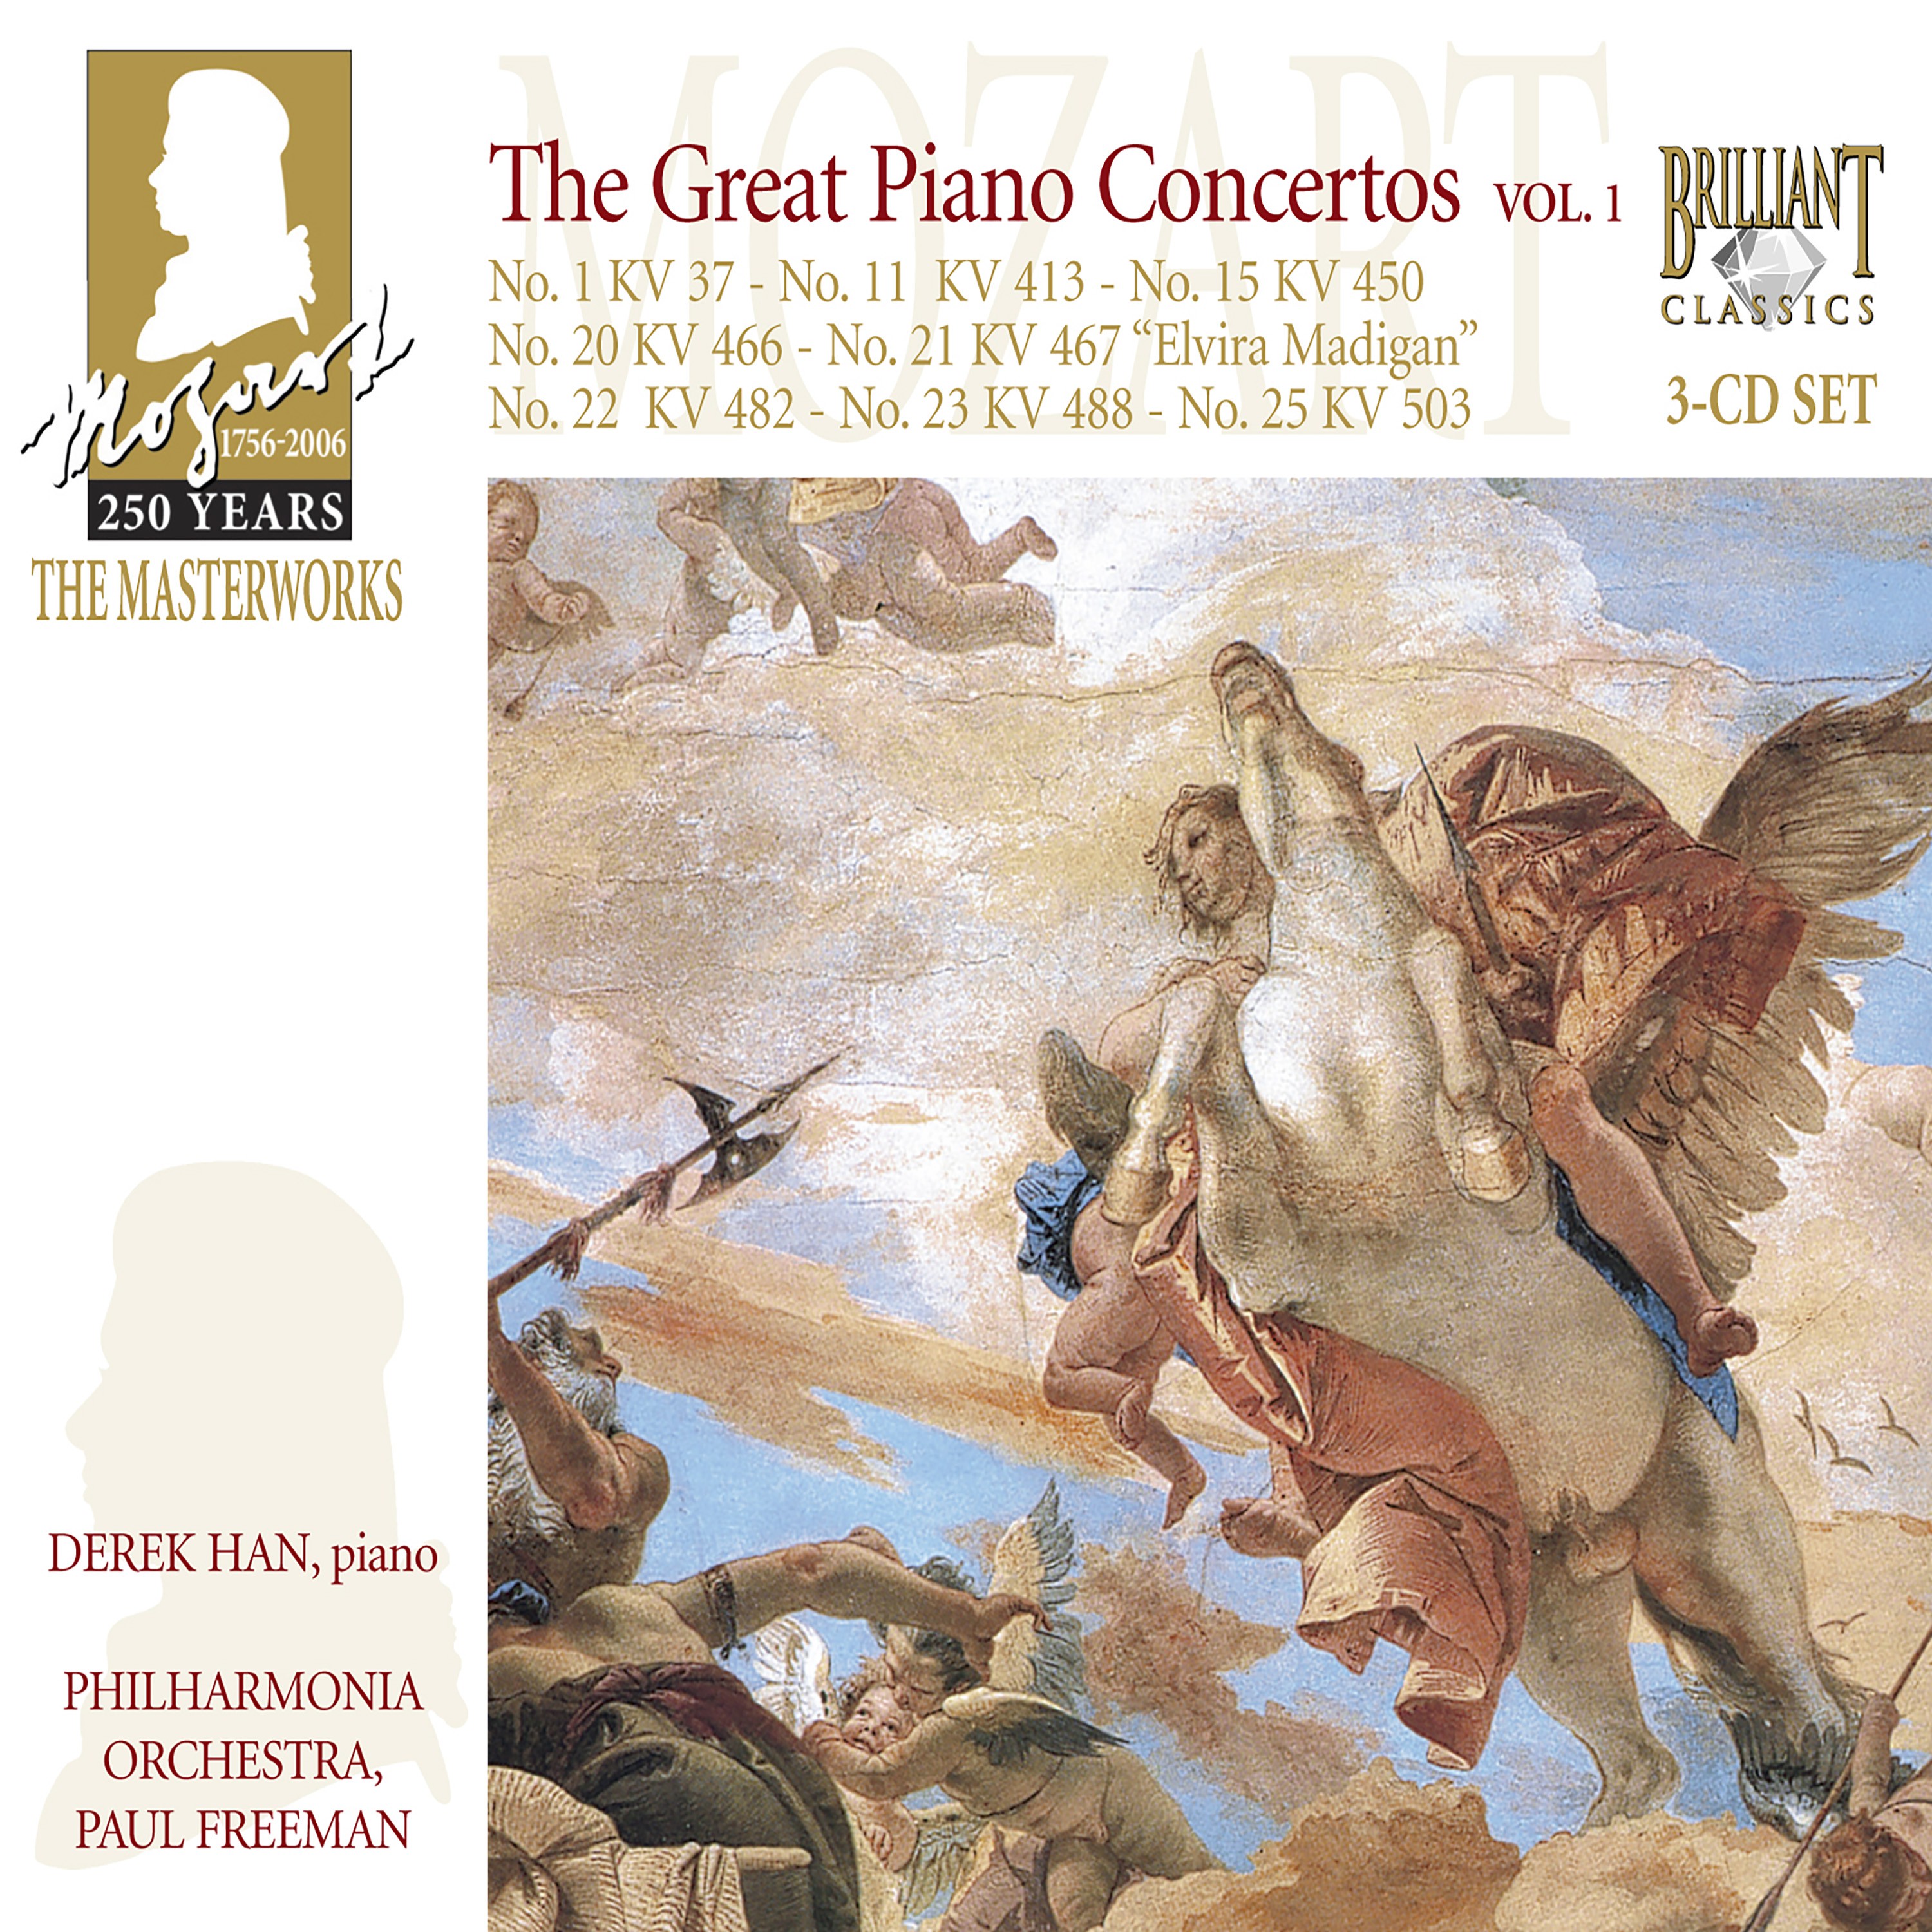 Piano Concerto No. 25 In C Major, K. 503: II. Andante